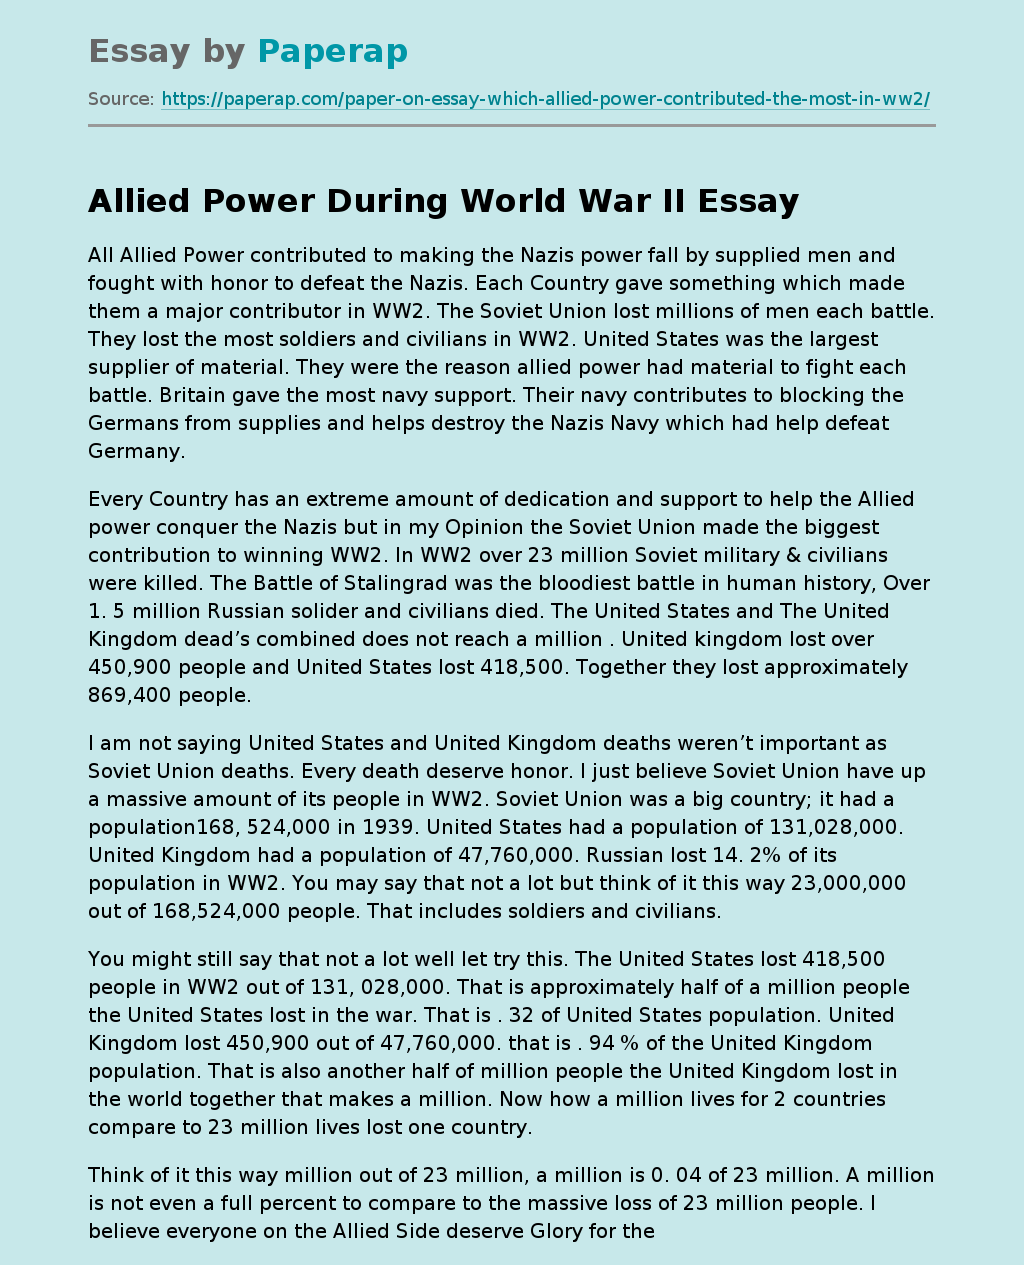 Allied Power During World War II